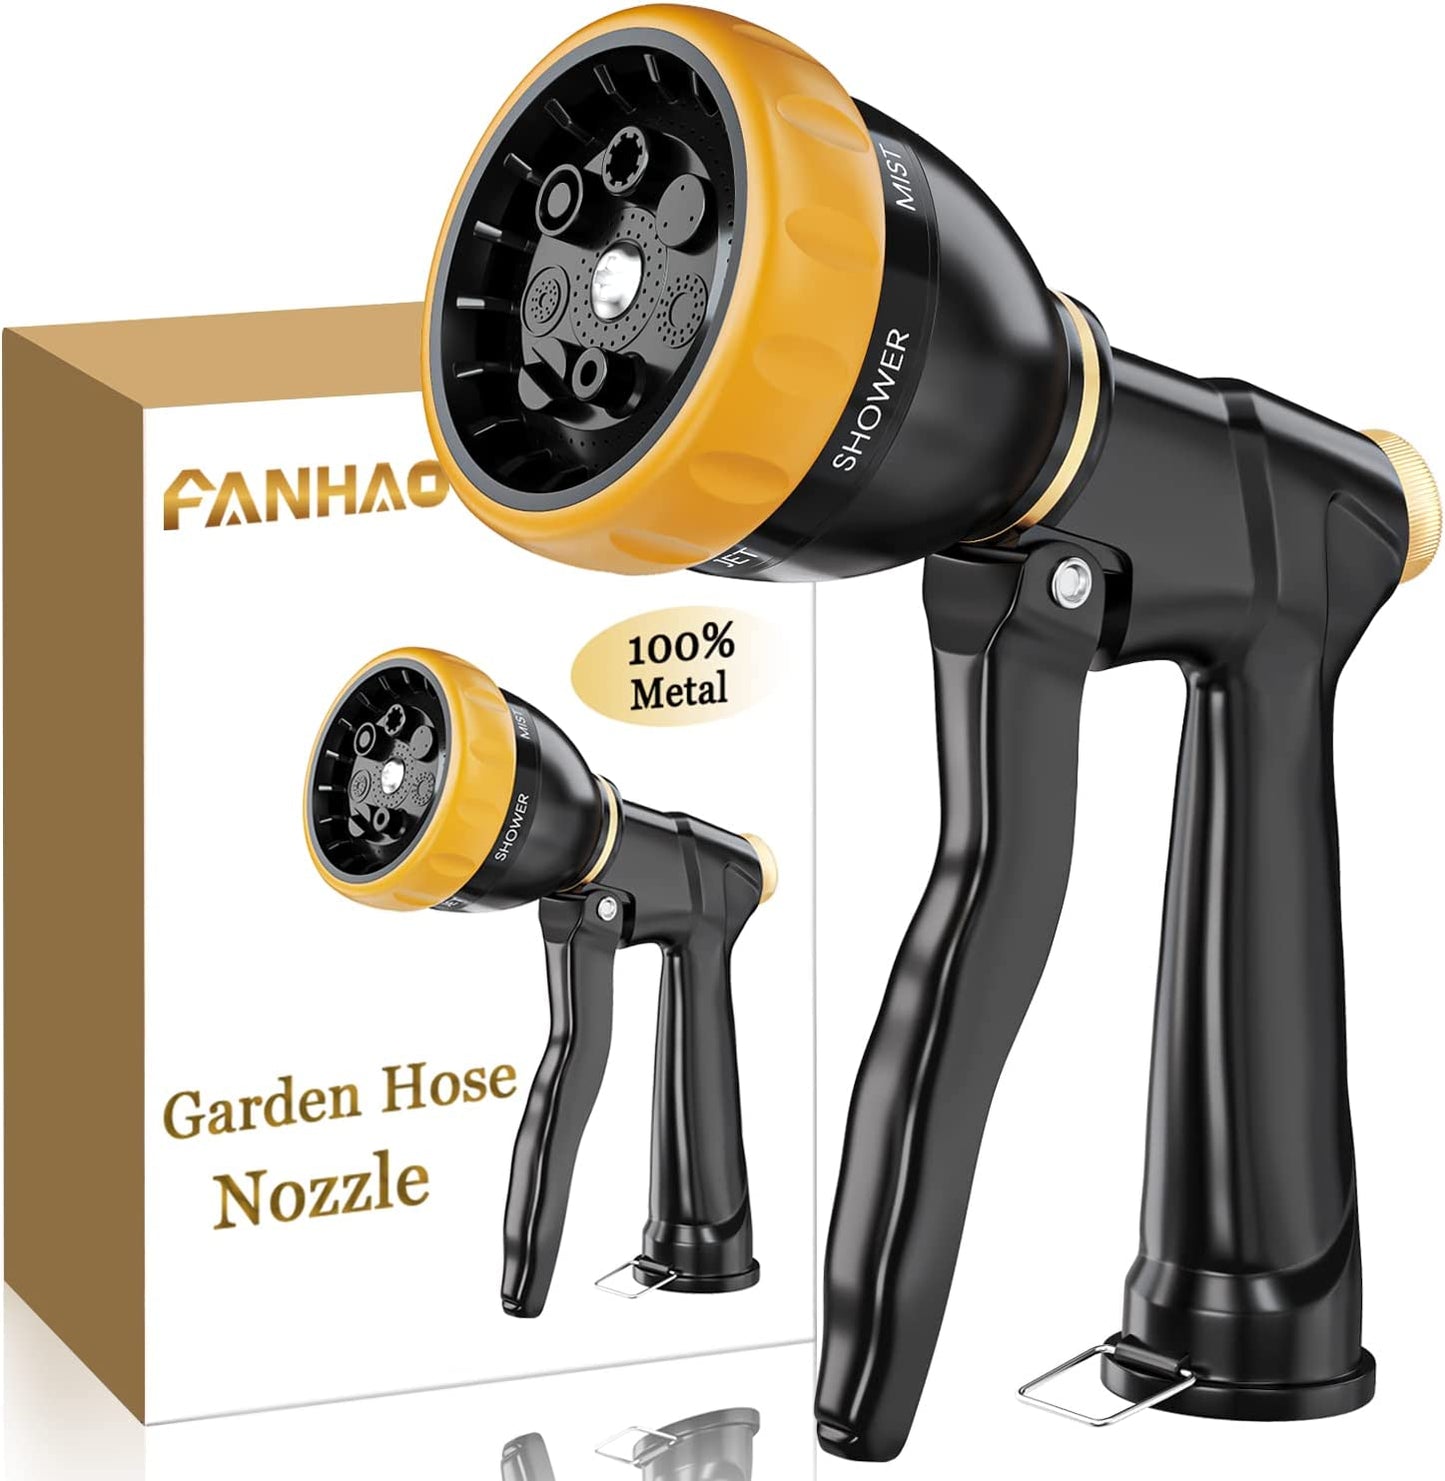 FANHAO Garden Hose Nozzle Sprayer, 100% Heavy Duty Metal Spray Nozzle with 7 Spray Patterns